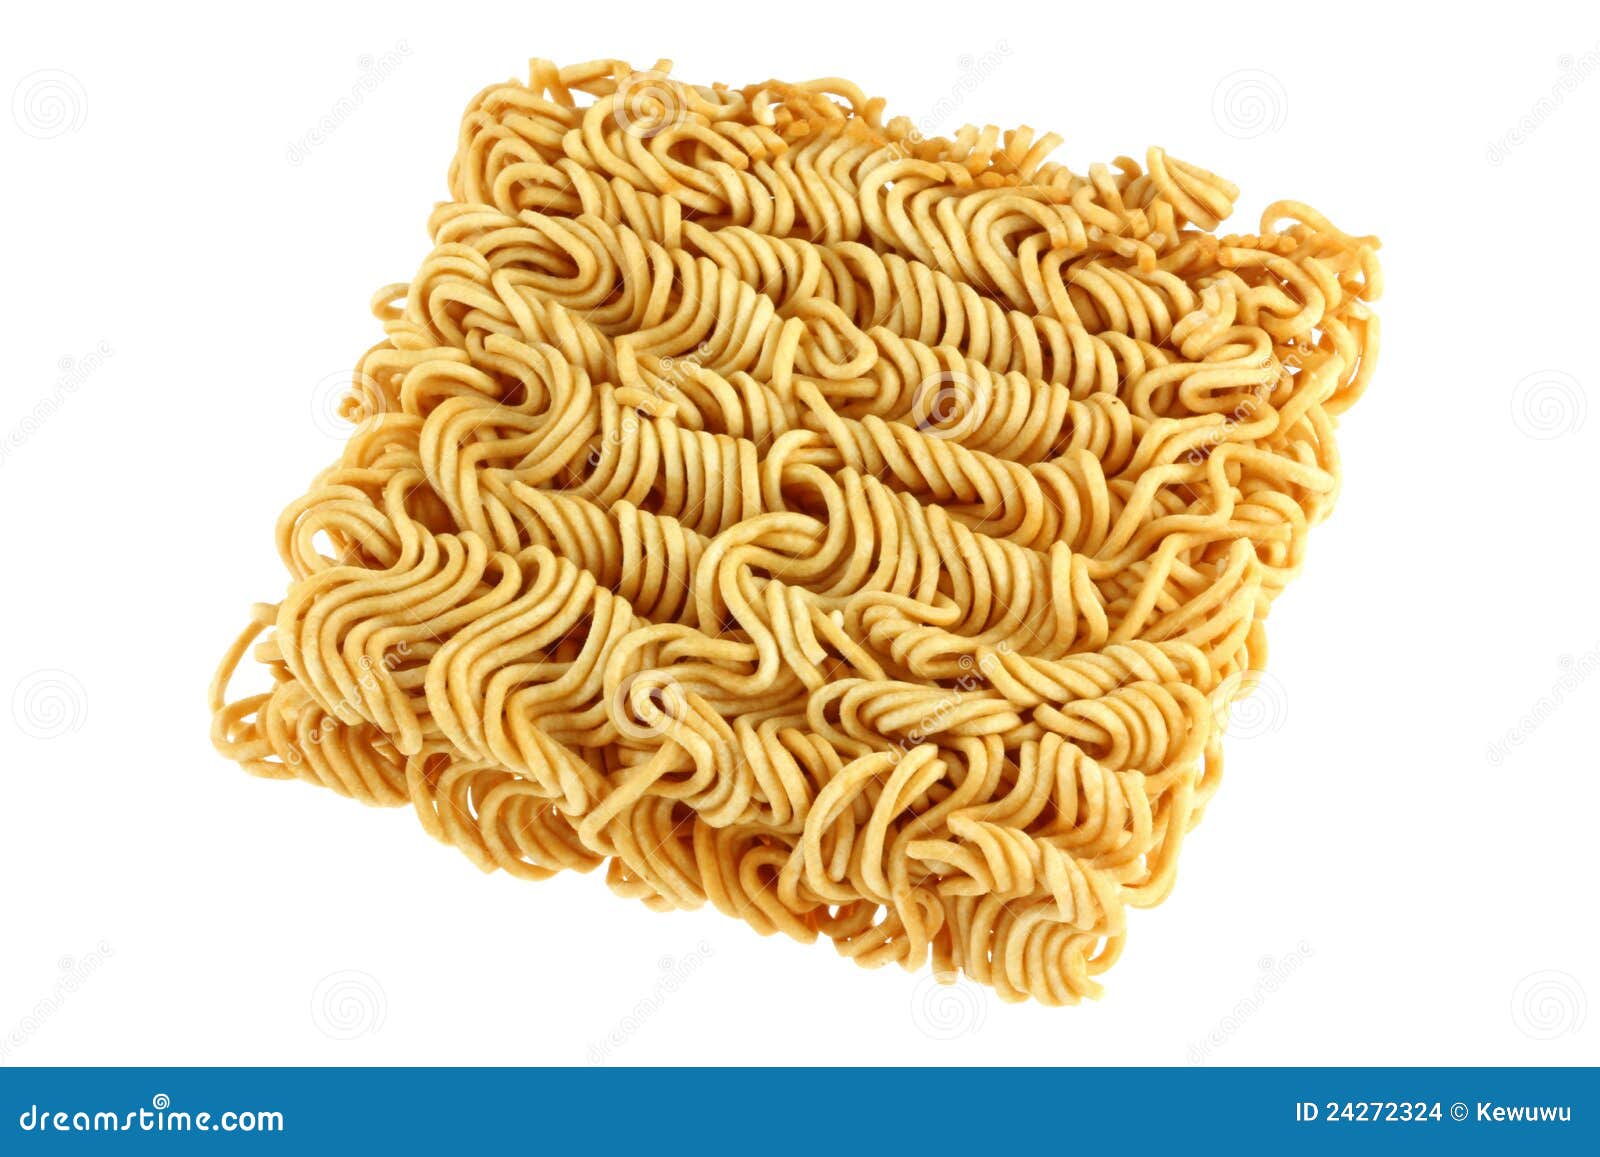 Vos pâtes favorites Block-dried-instant-noodles-24272324